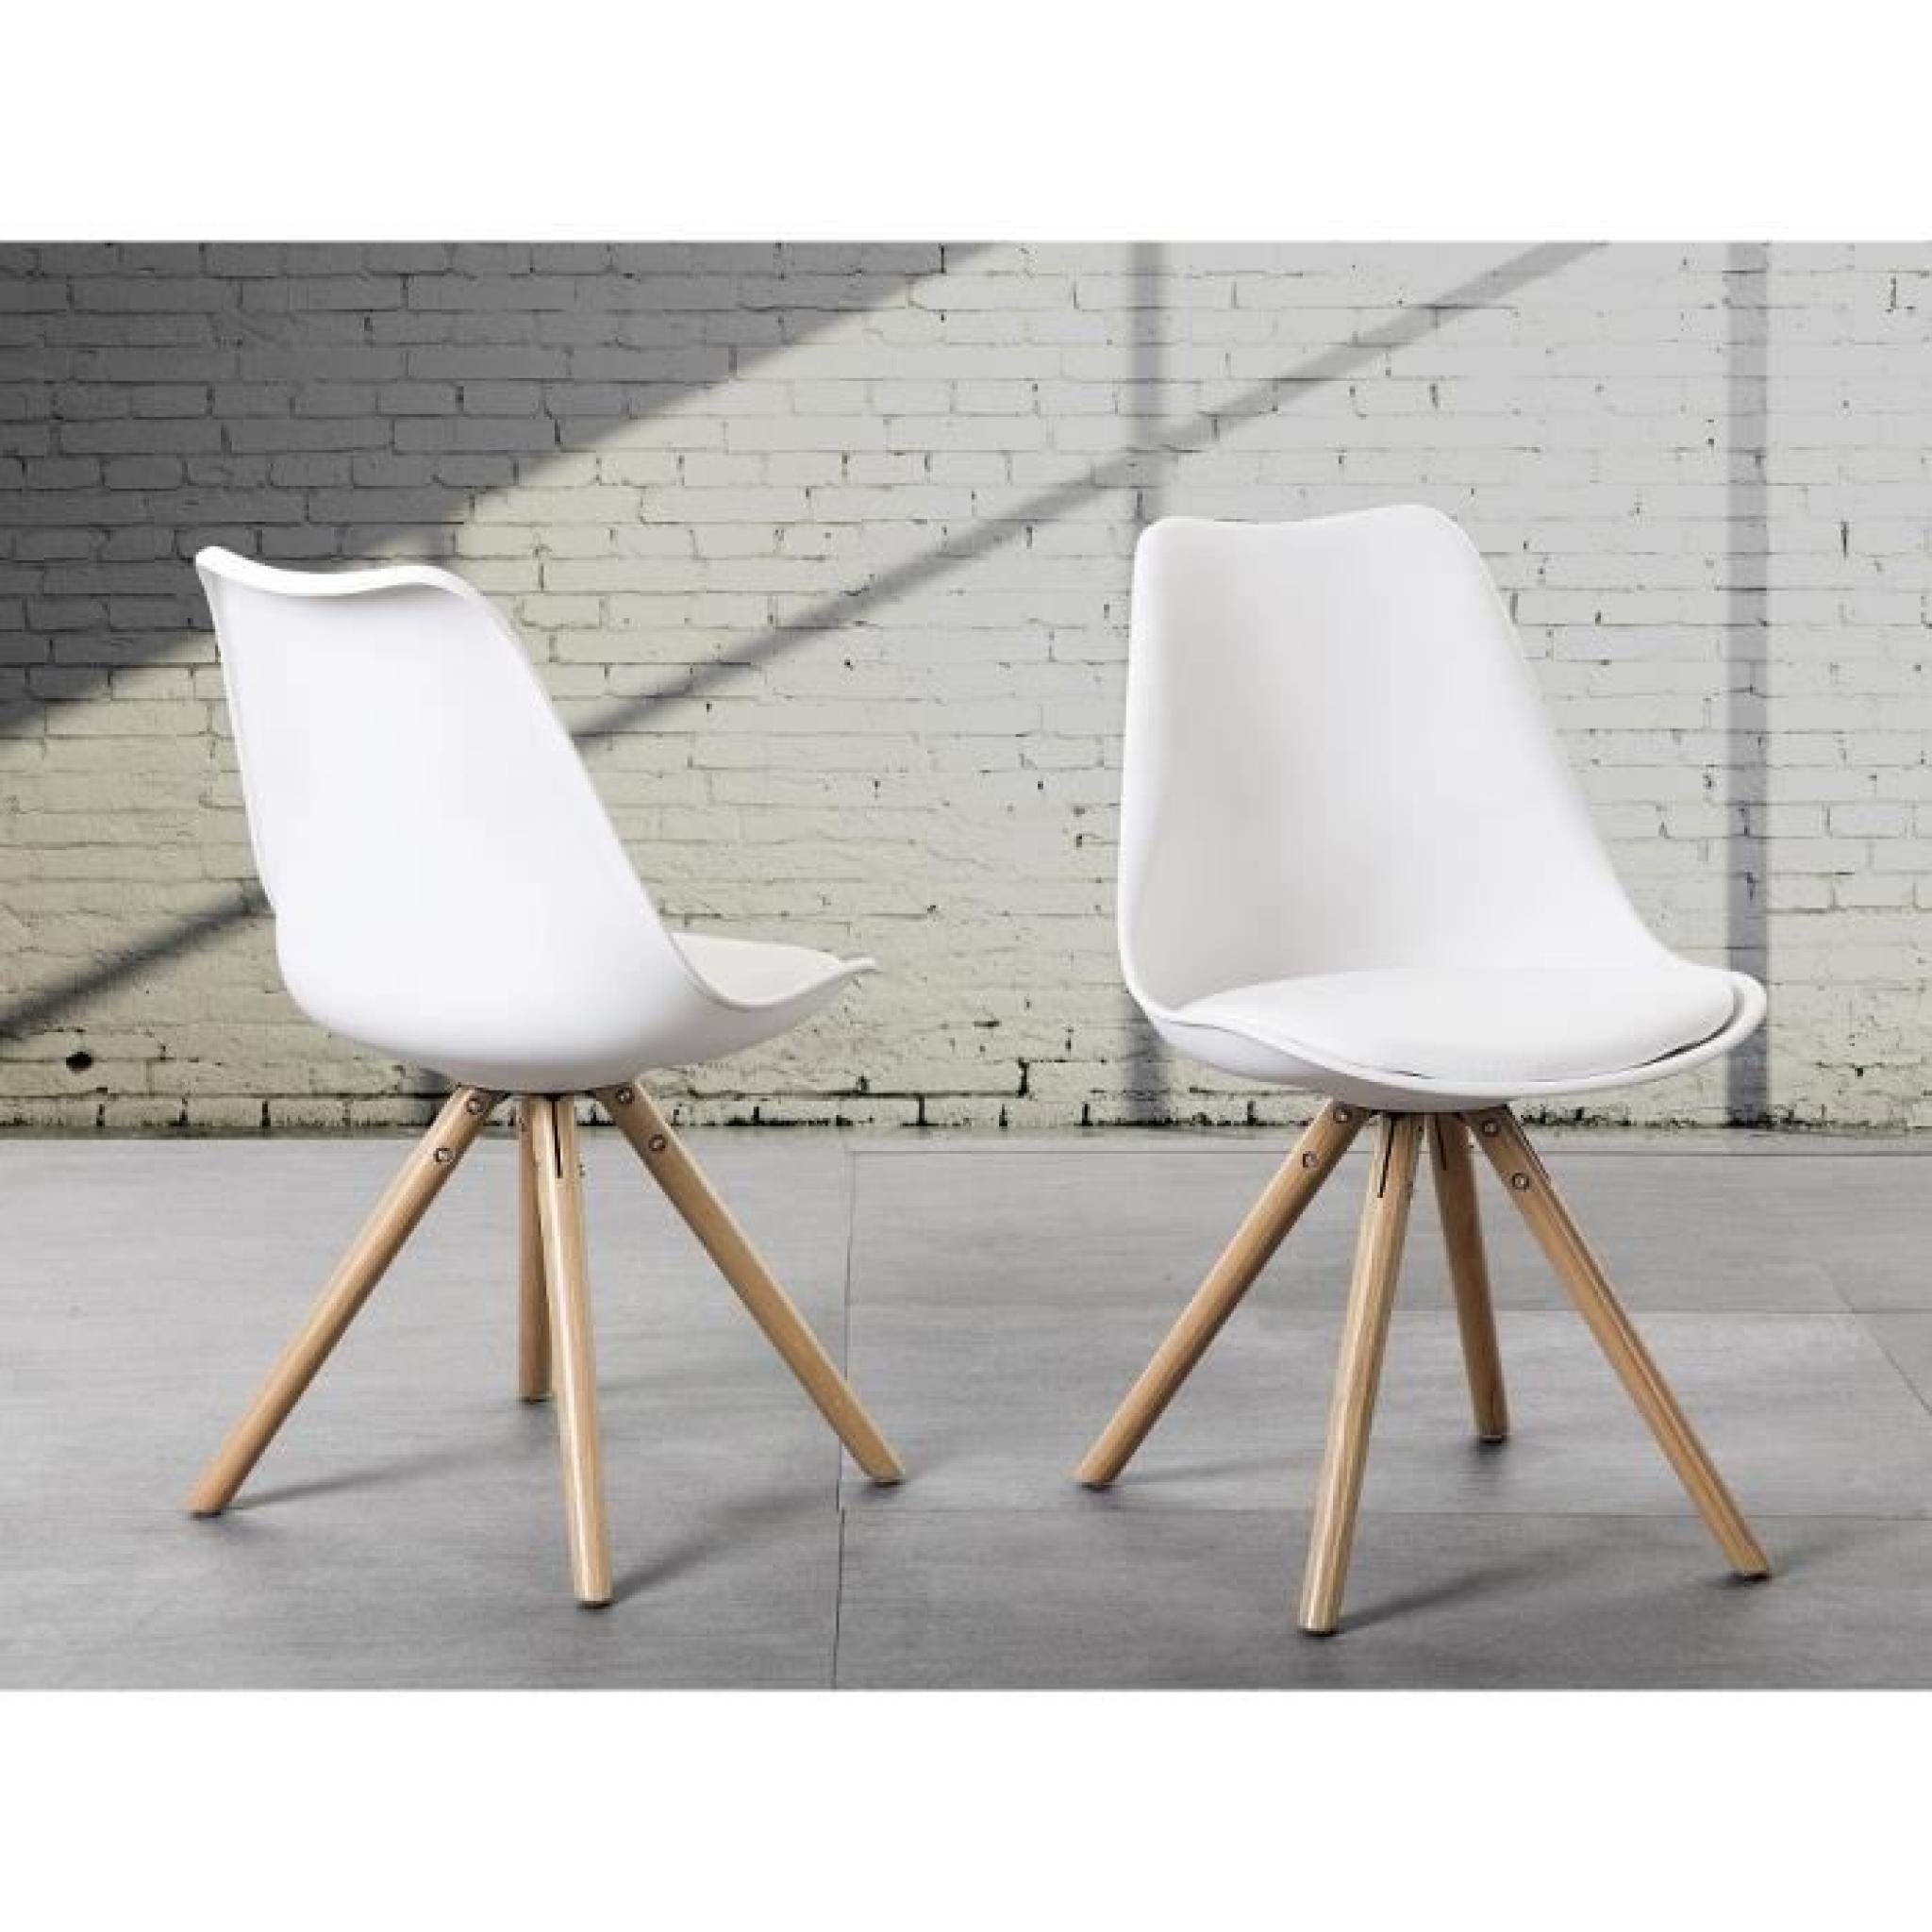 Chaise design - siège en plastique blanc - Moca